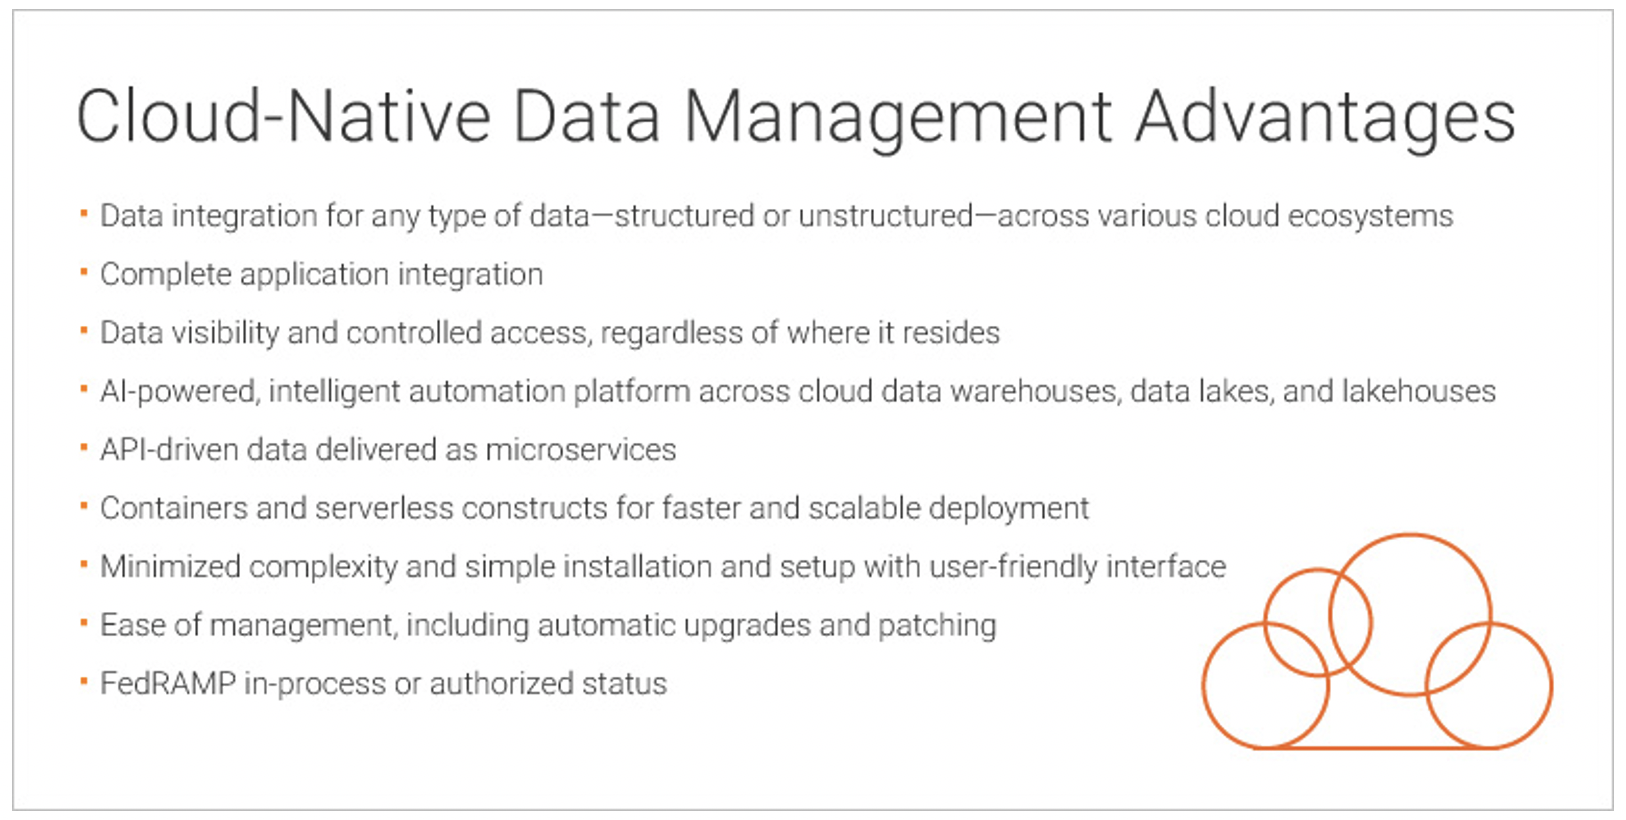 Cloud-Native Data Management Advantages